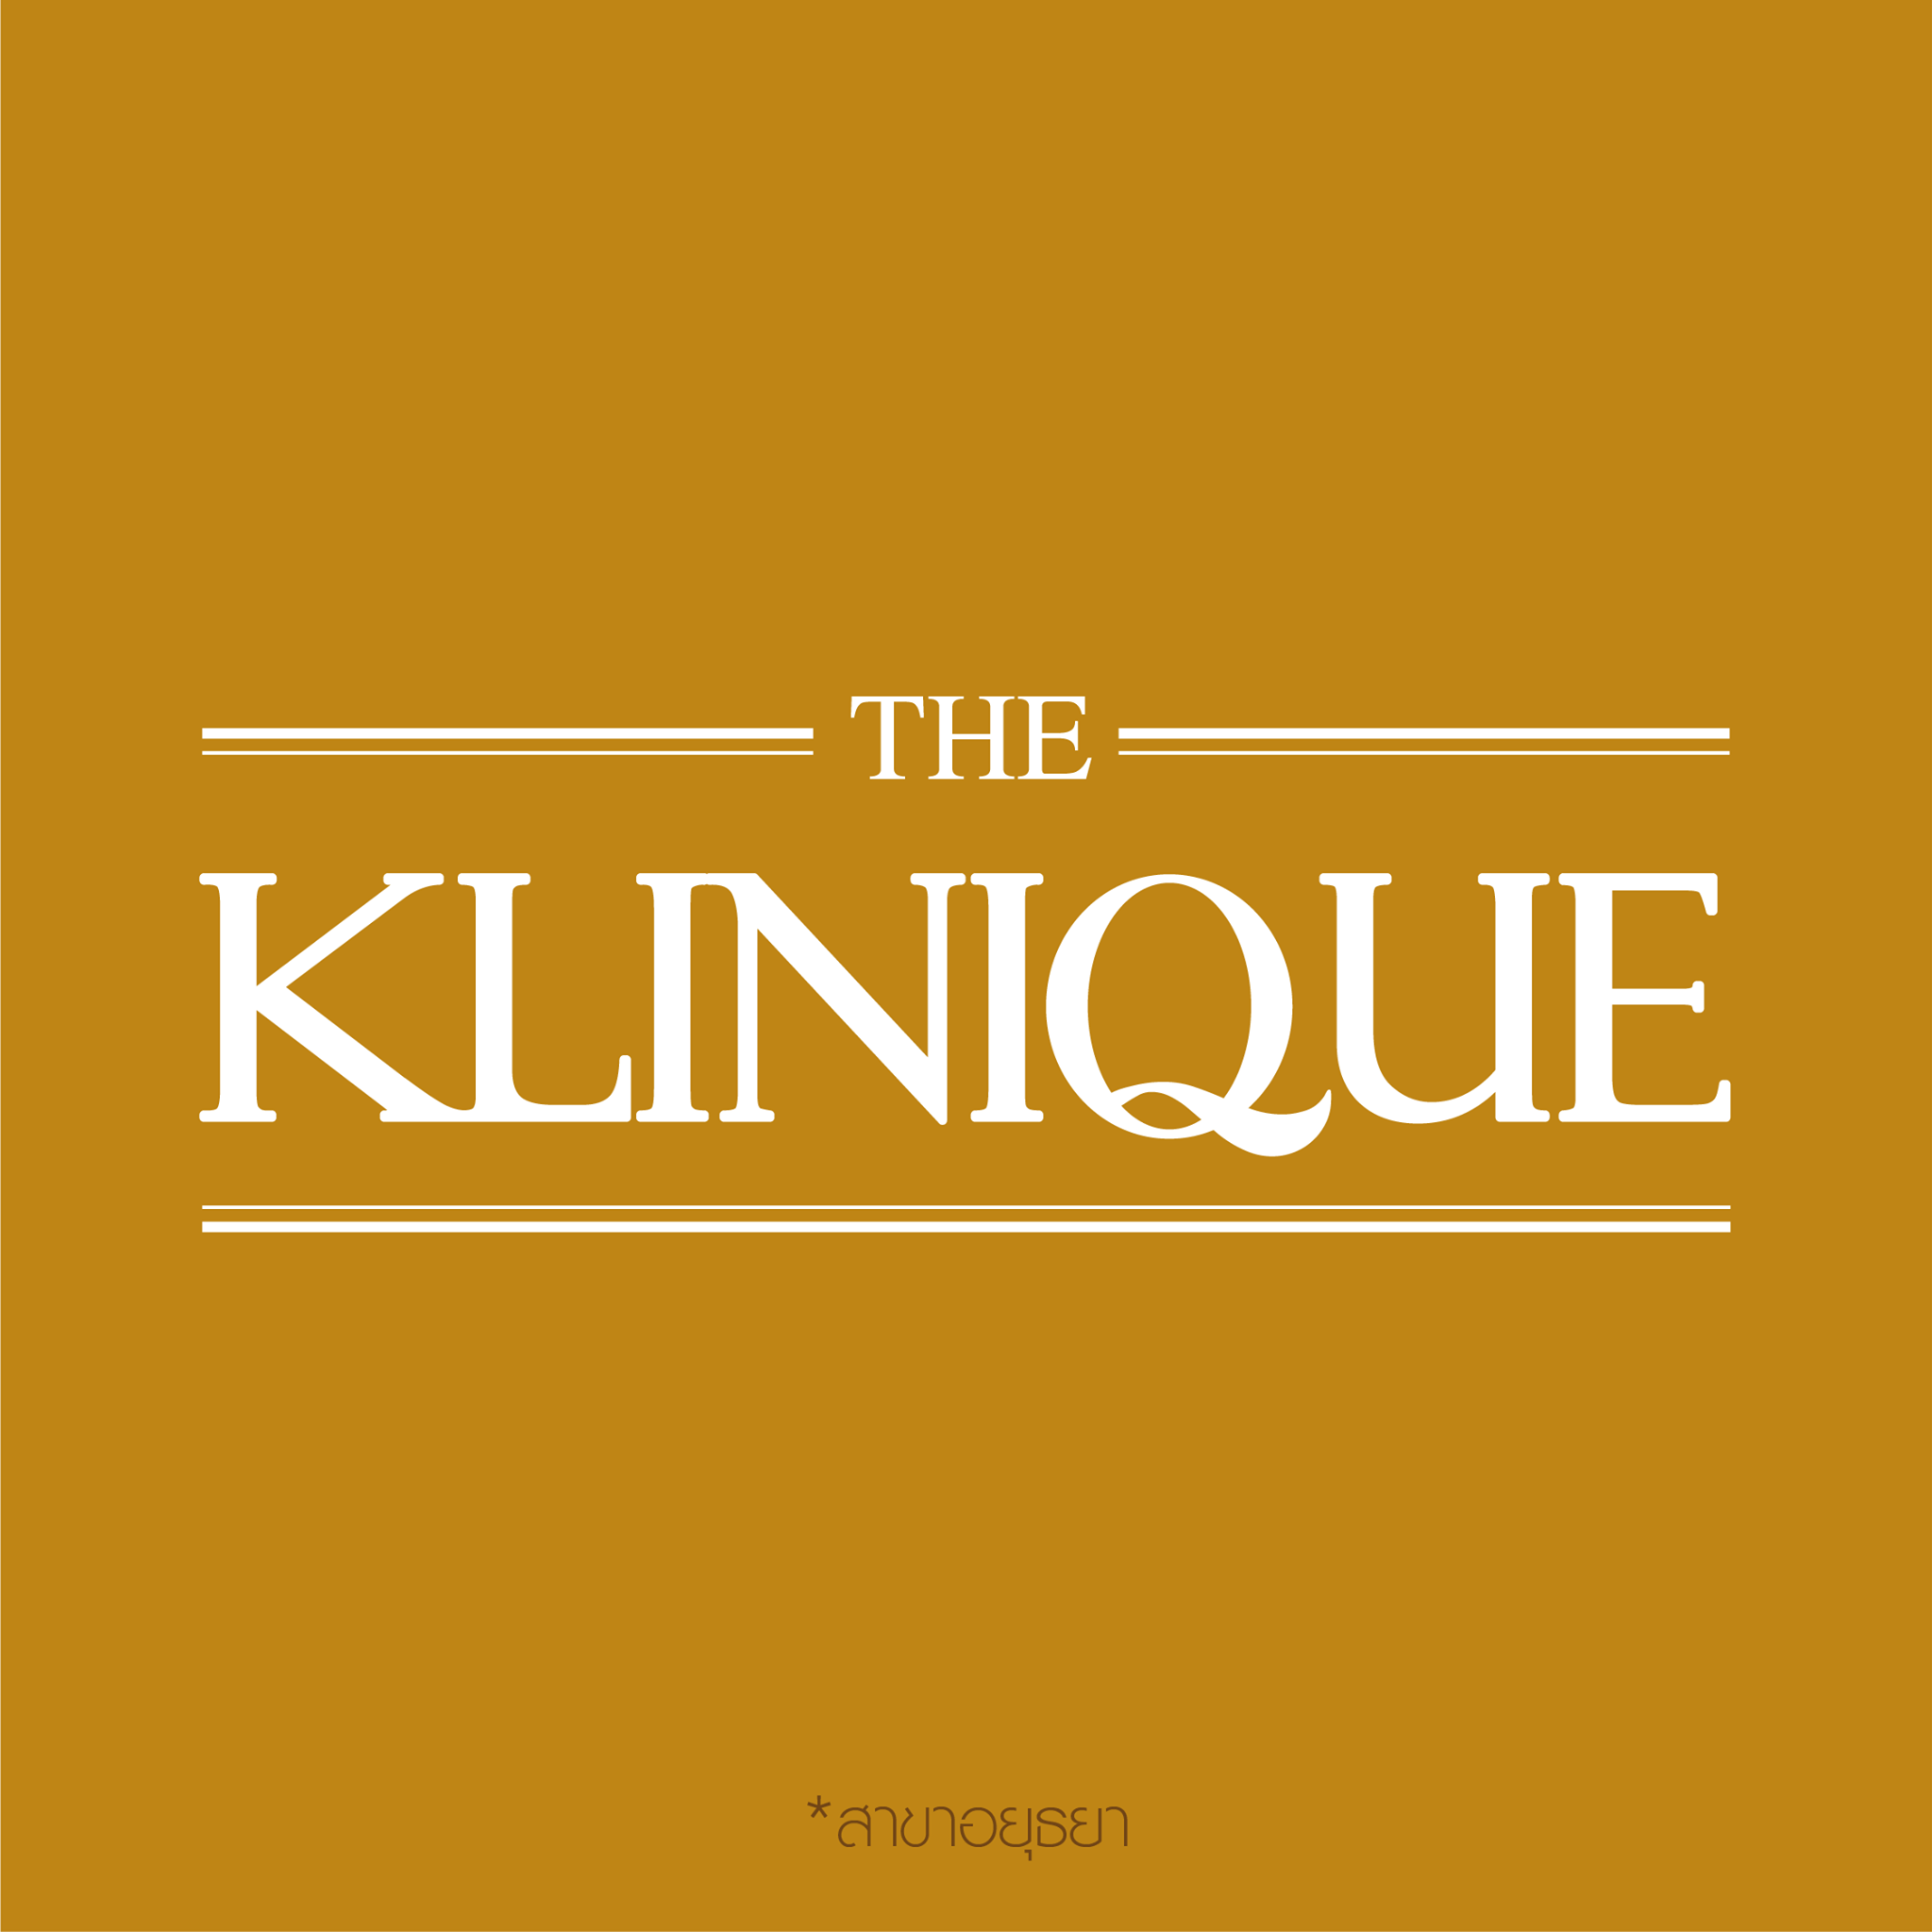 THE KLINIQUE